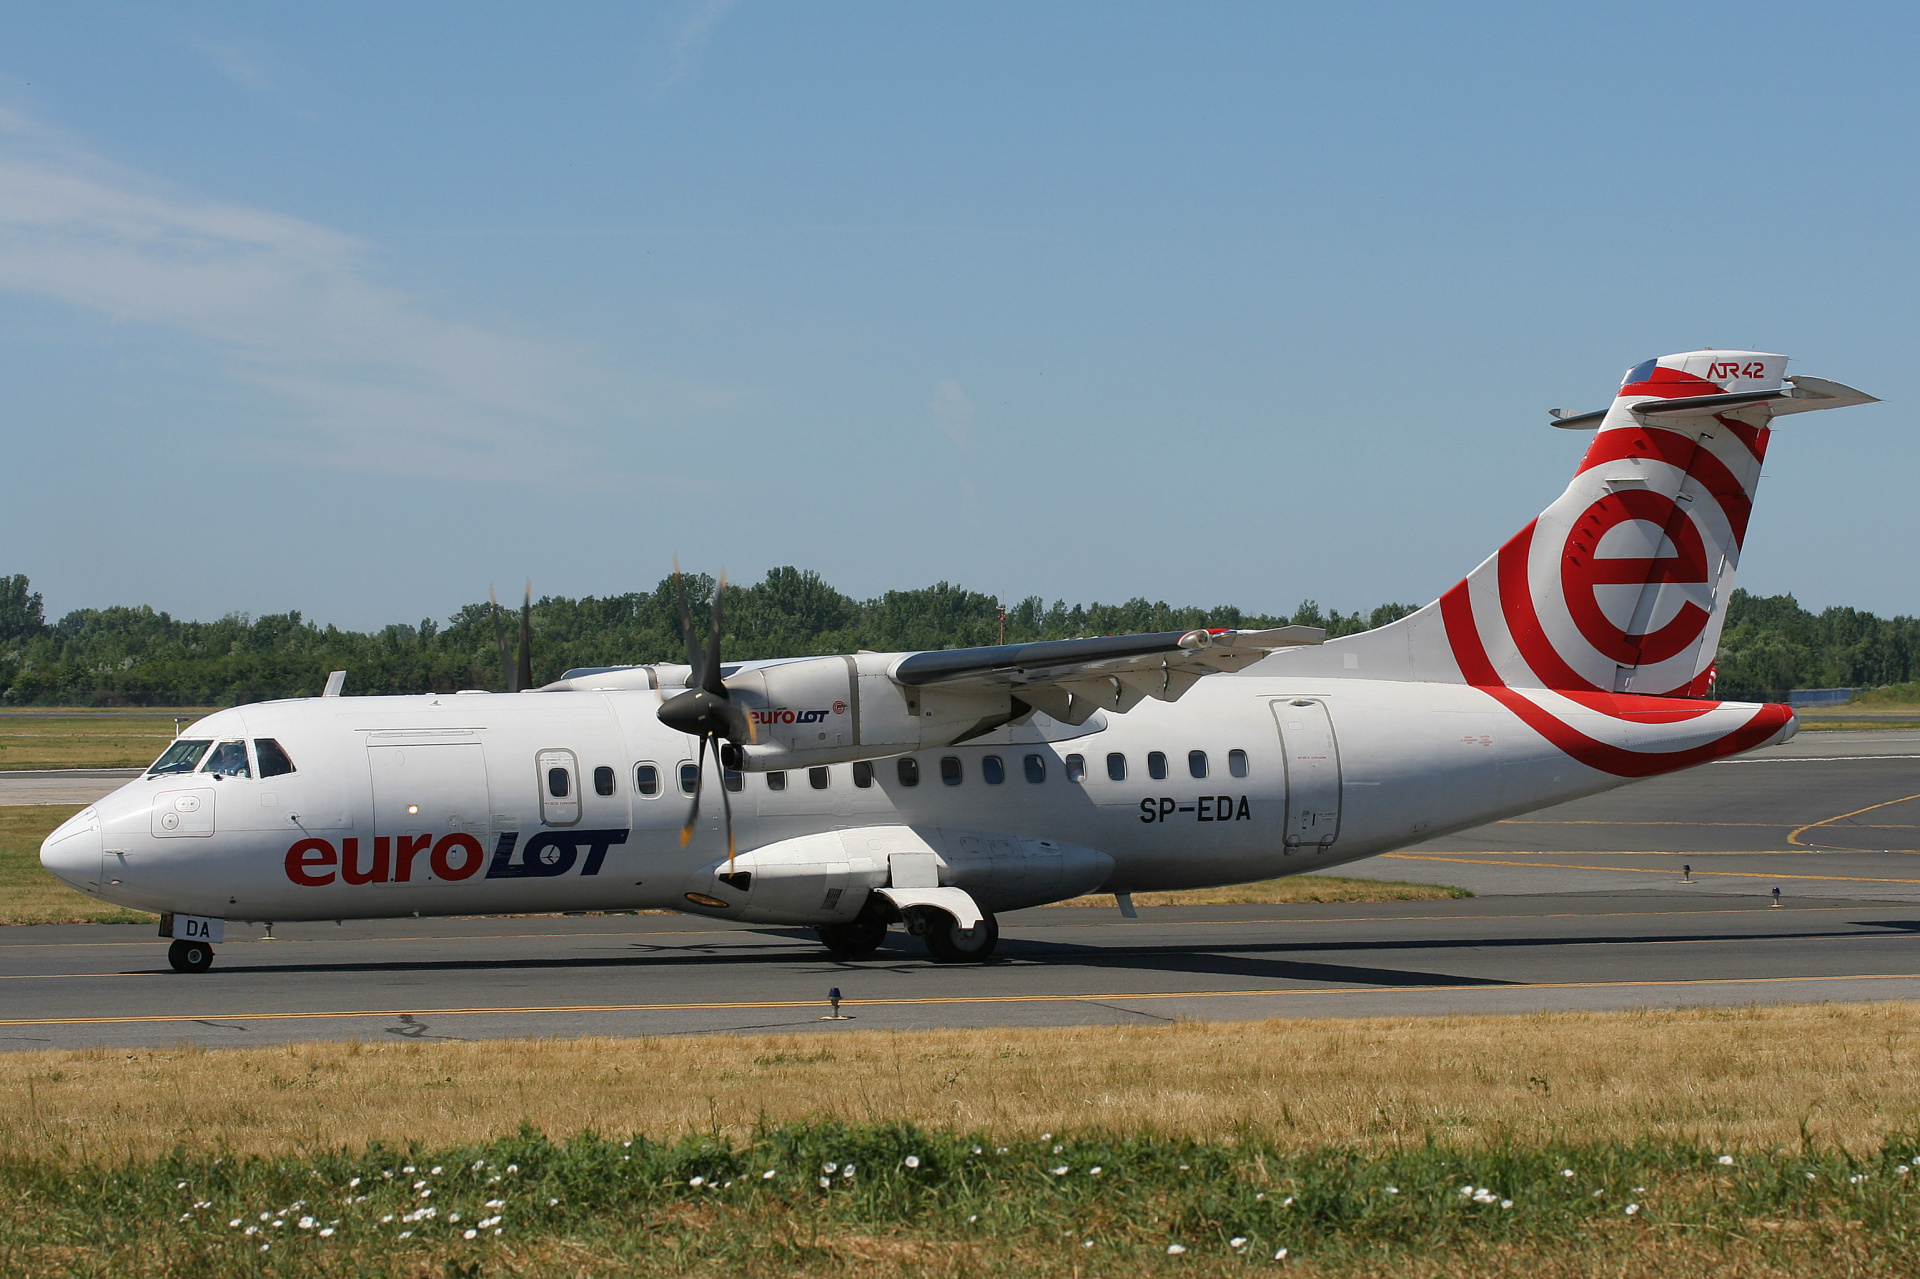 SP-EDA (Aircraft » EPWA Spotting » ATR 42 » EuroLOT)